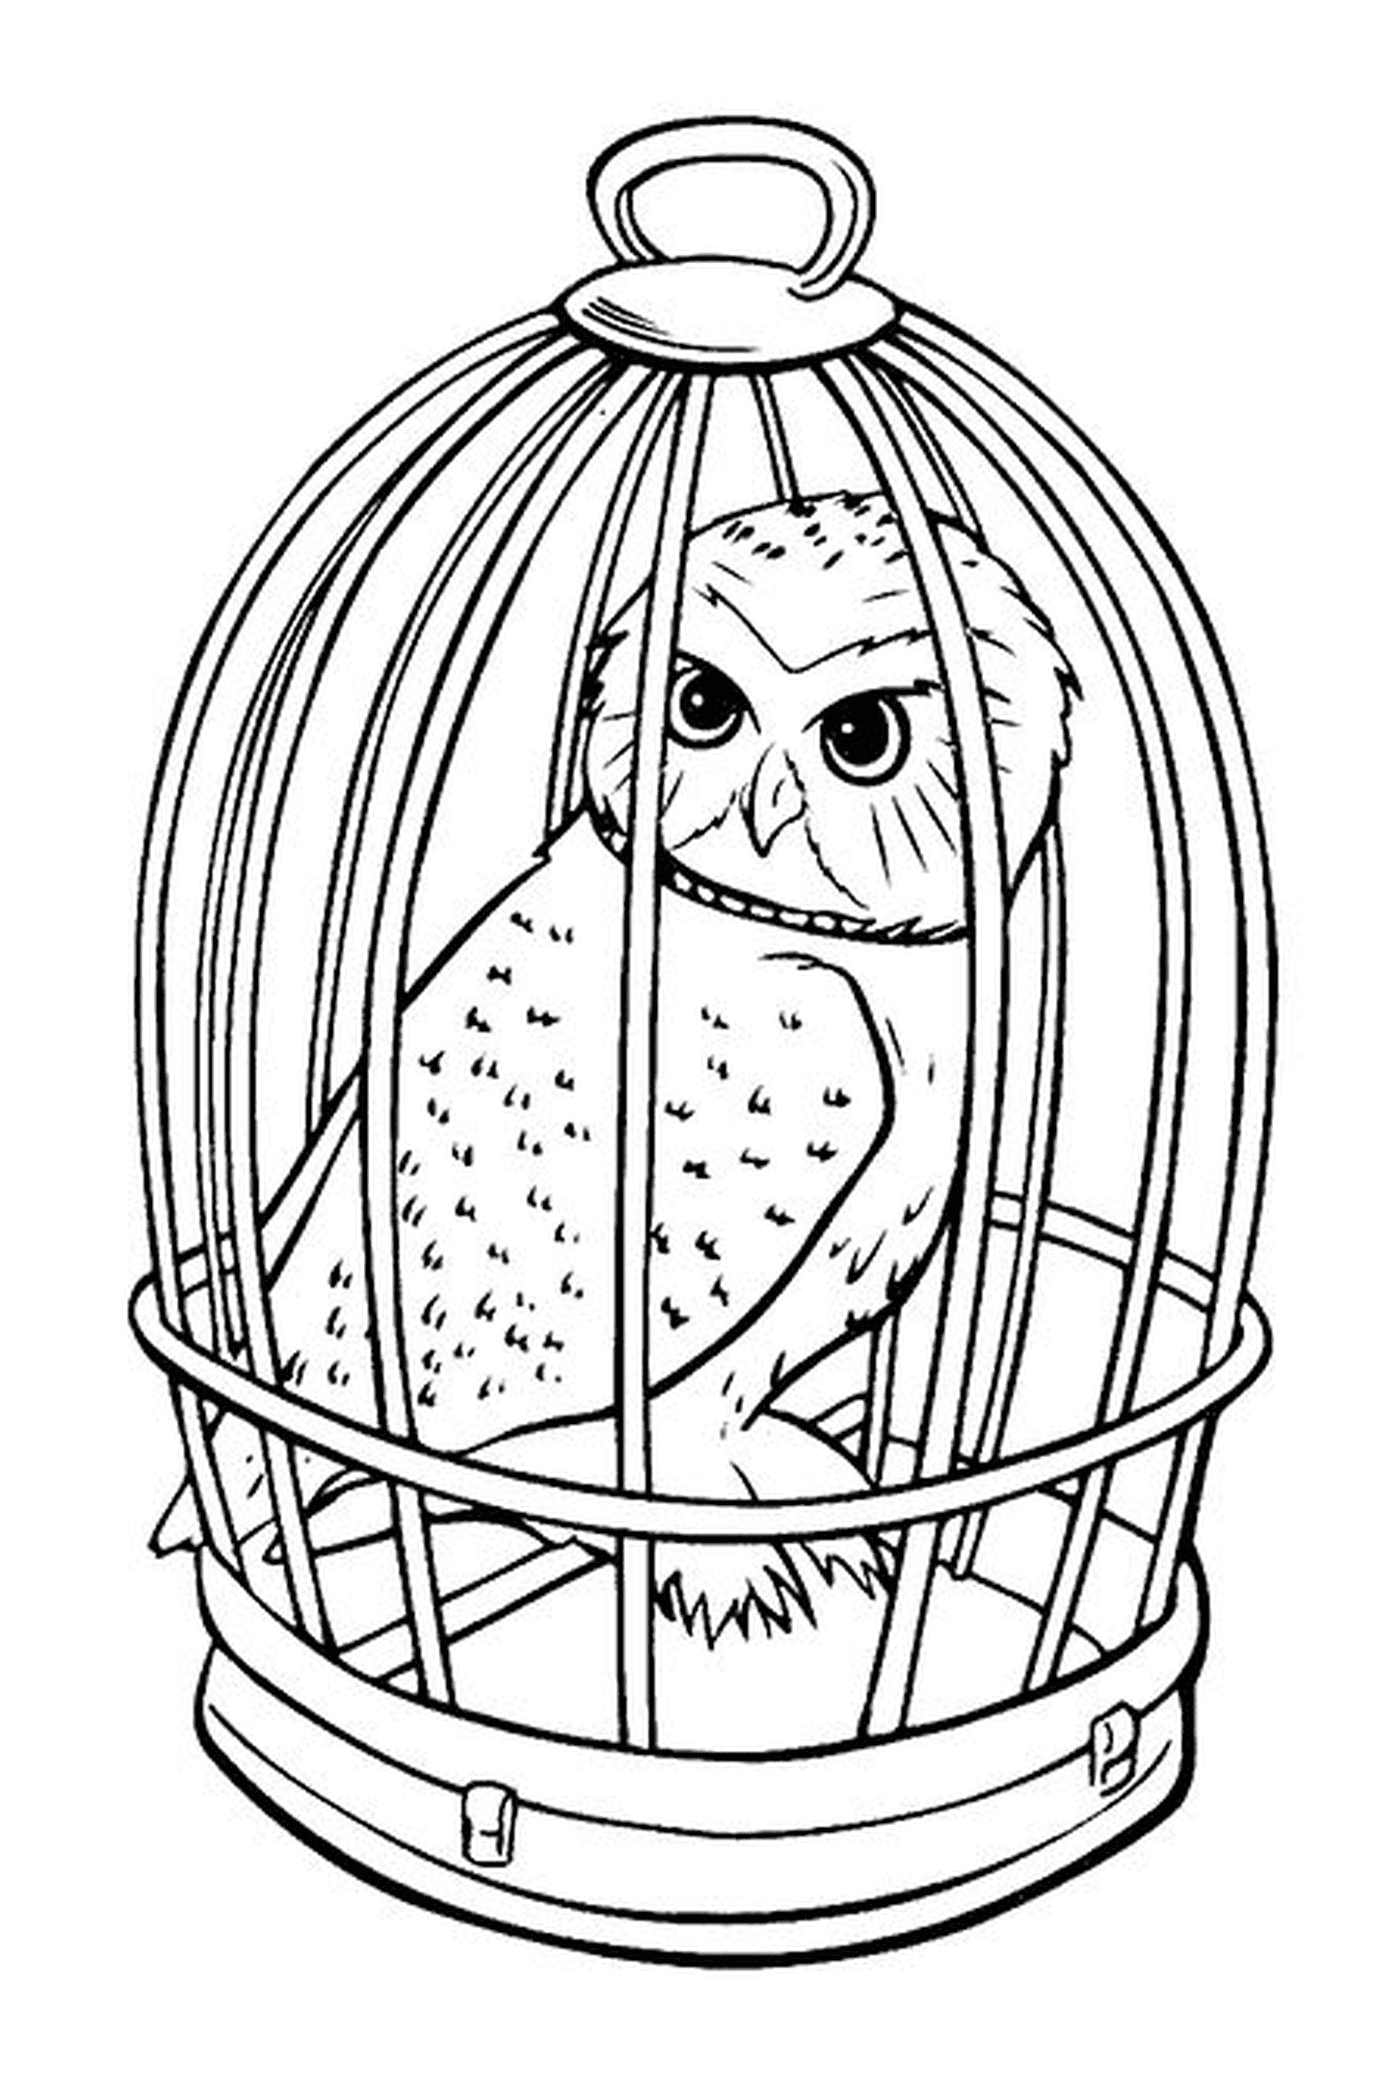  Die Eule Hedwige in einem Käfig 